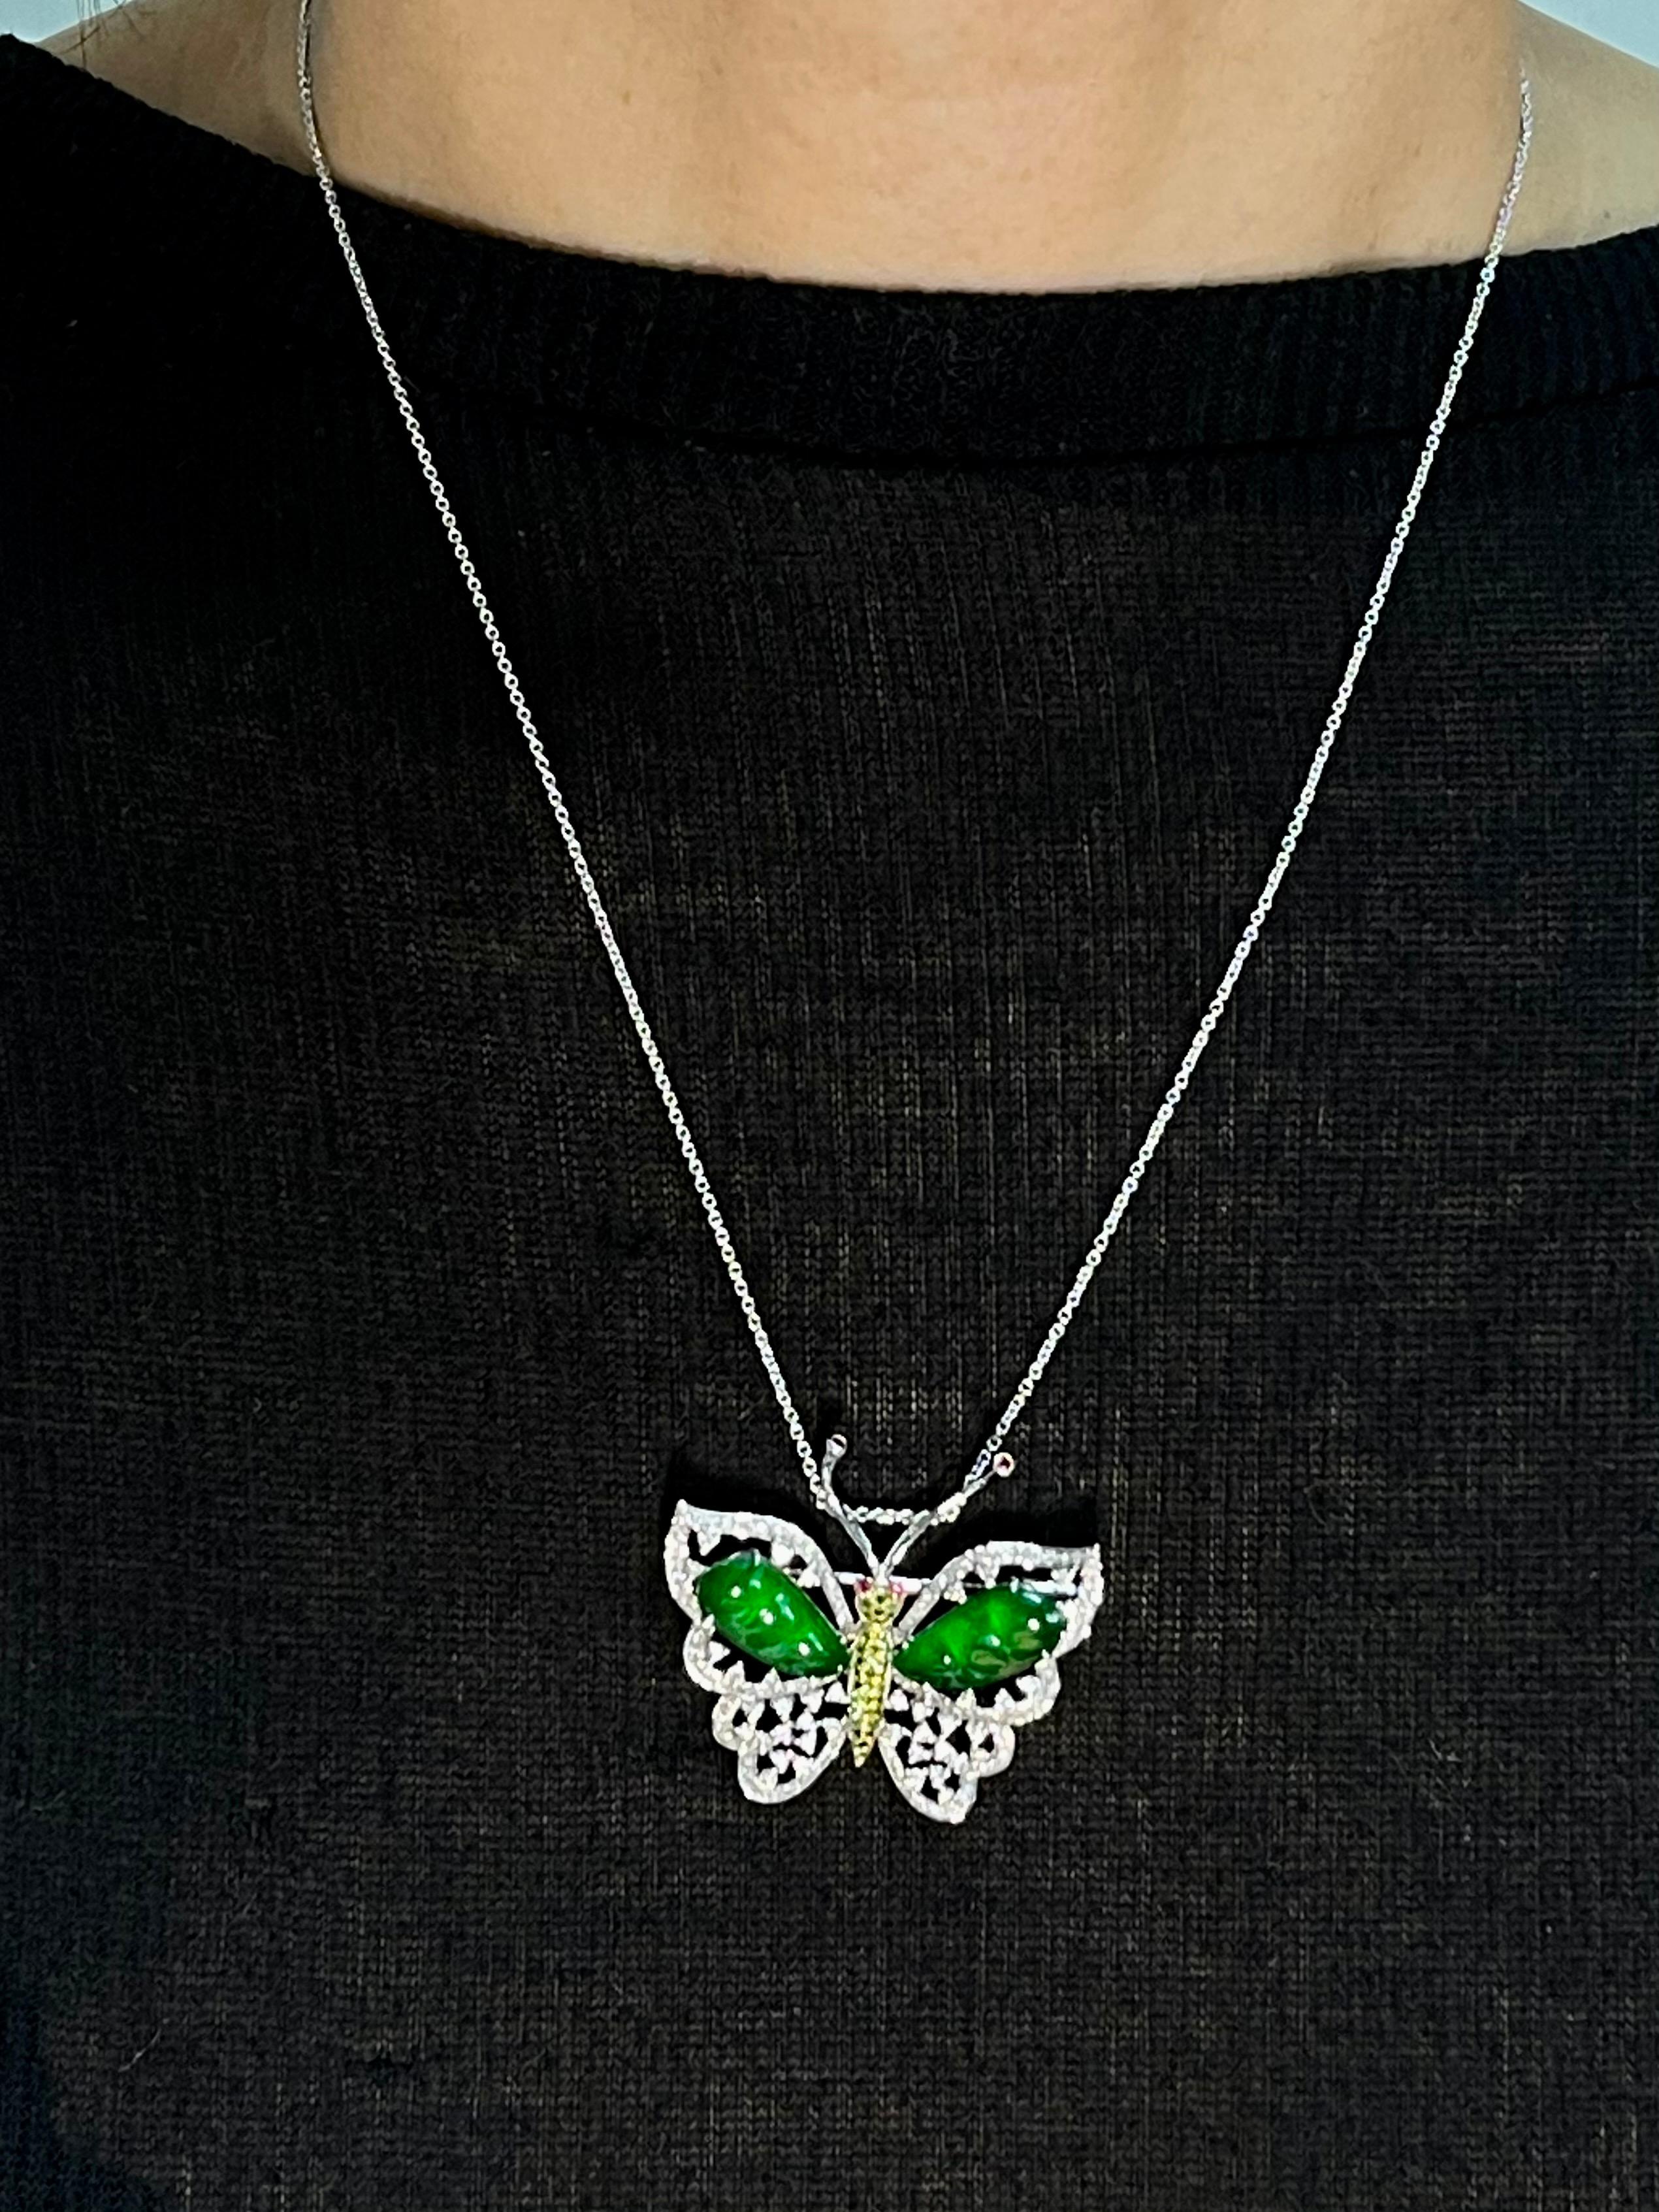 Ce papillon en jadéite impériale est hors du commun ! Il est certifié par deux laboratoires comme étant du jade naturel. Le pendentif / broche est serti en or blanc et en or jaune 18 carats. Il y a 2 ailes en jade vert impérial sculpté. Nous